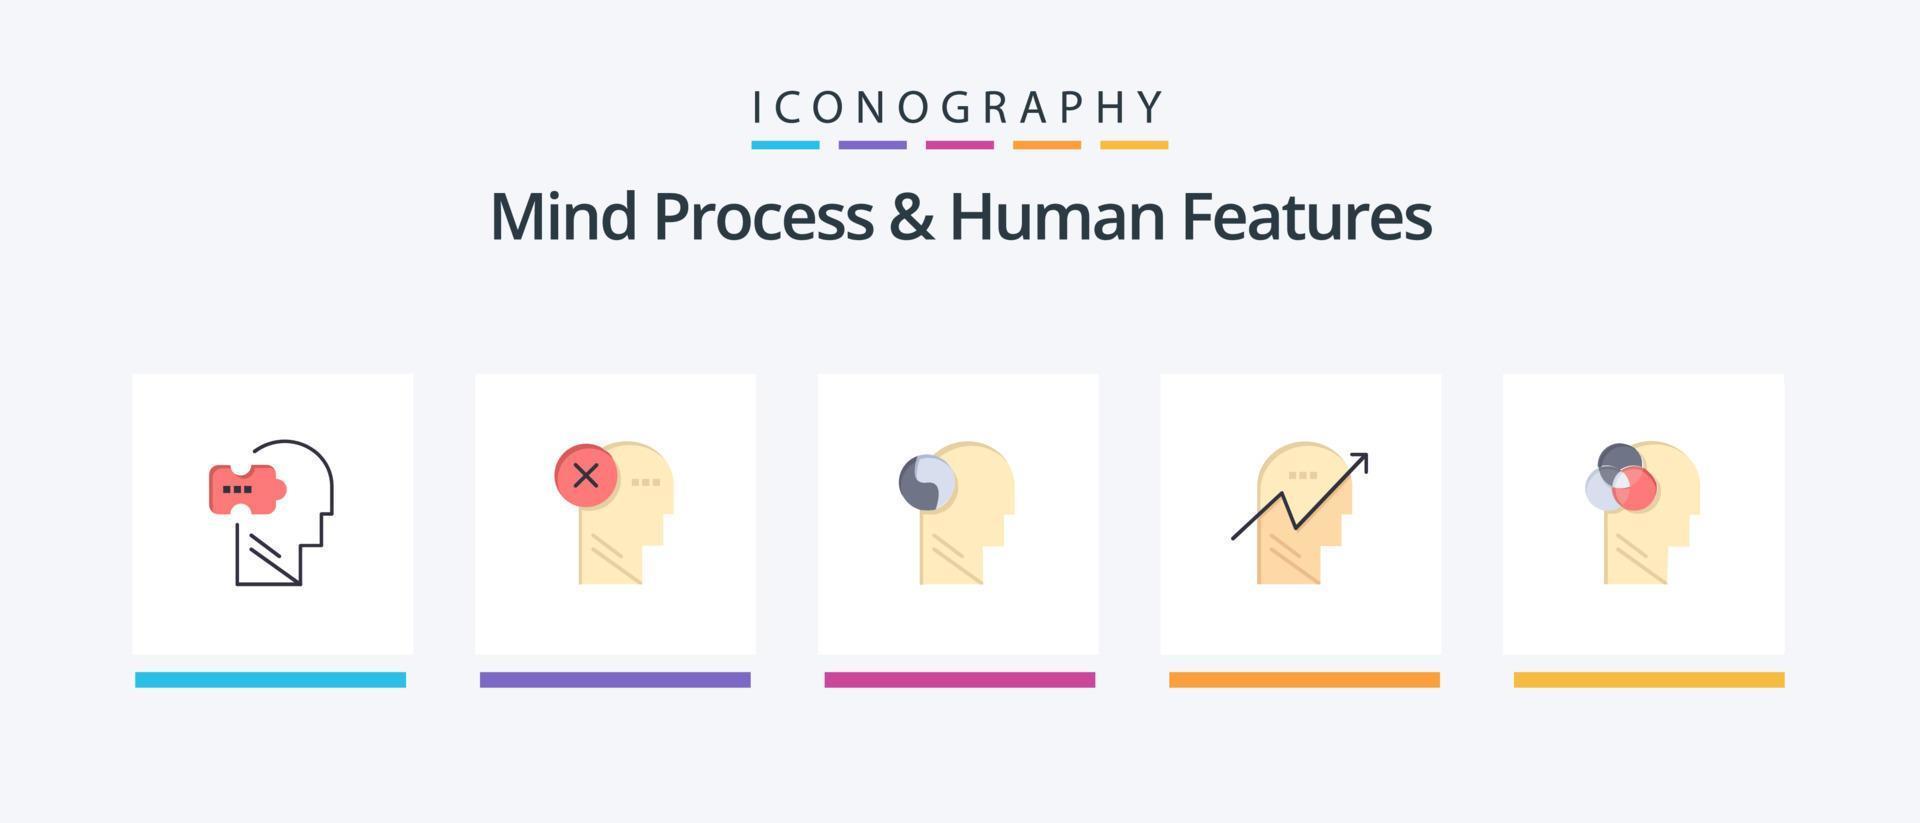 processus mental et caractéristiques humaines pack plat de 5 icônes, y compris humain. flèche. marquer. esprit. brian. conception d'icônes créatives vecteur